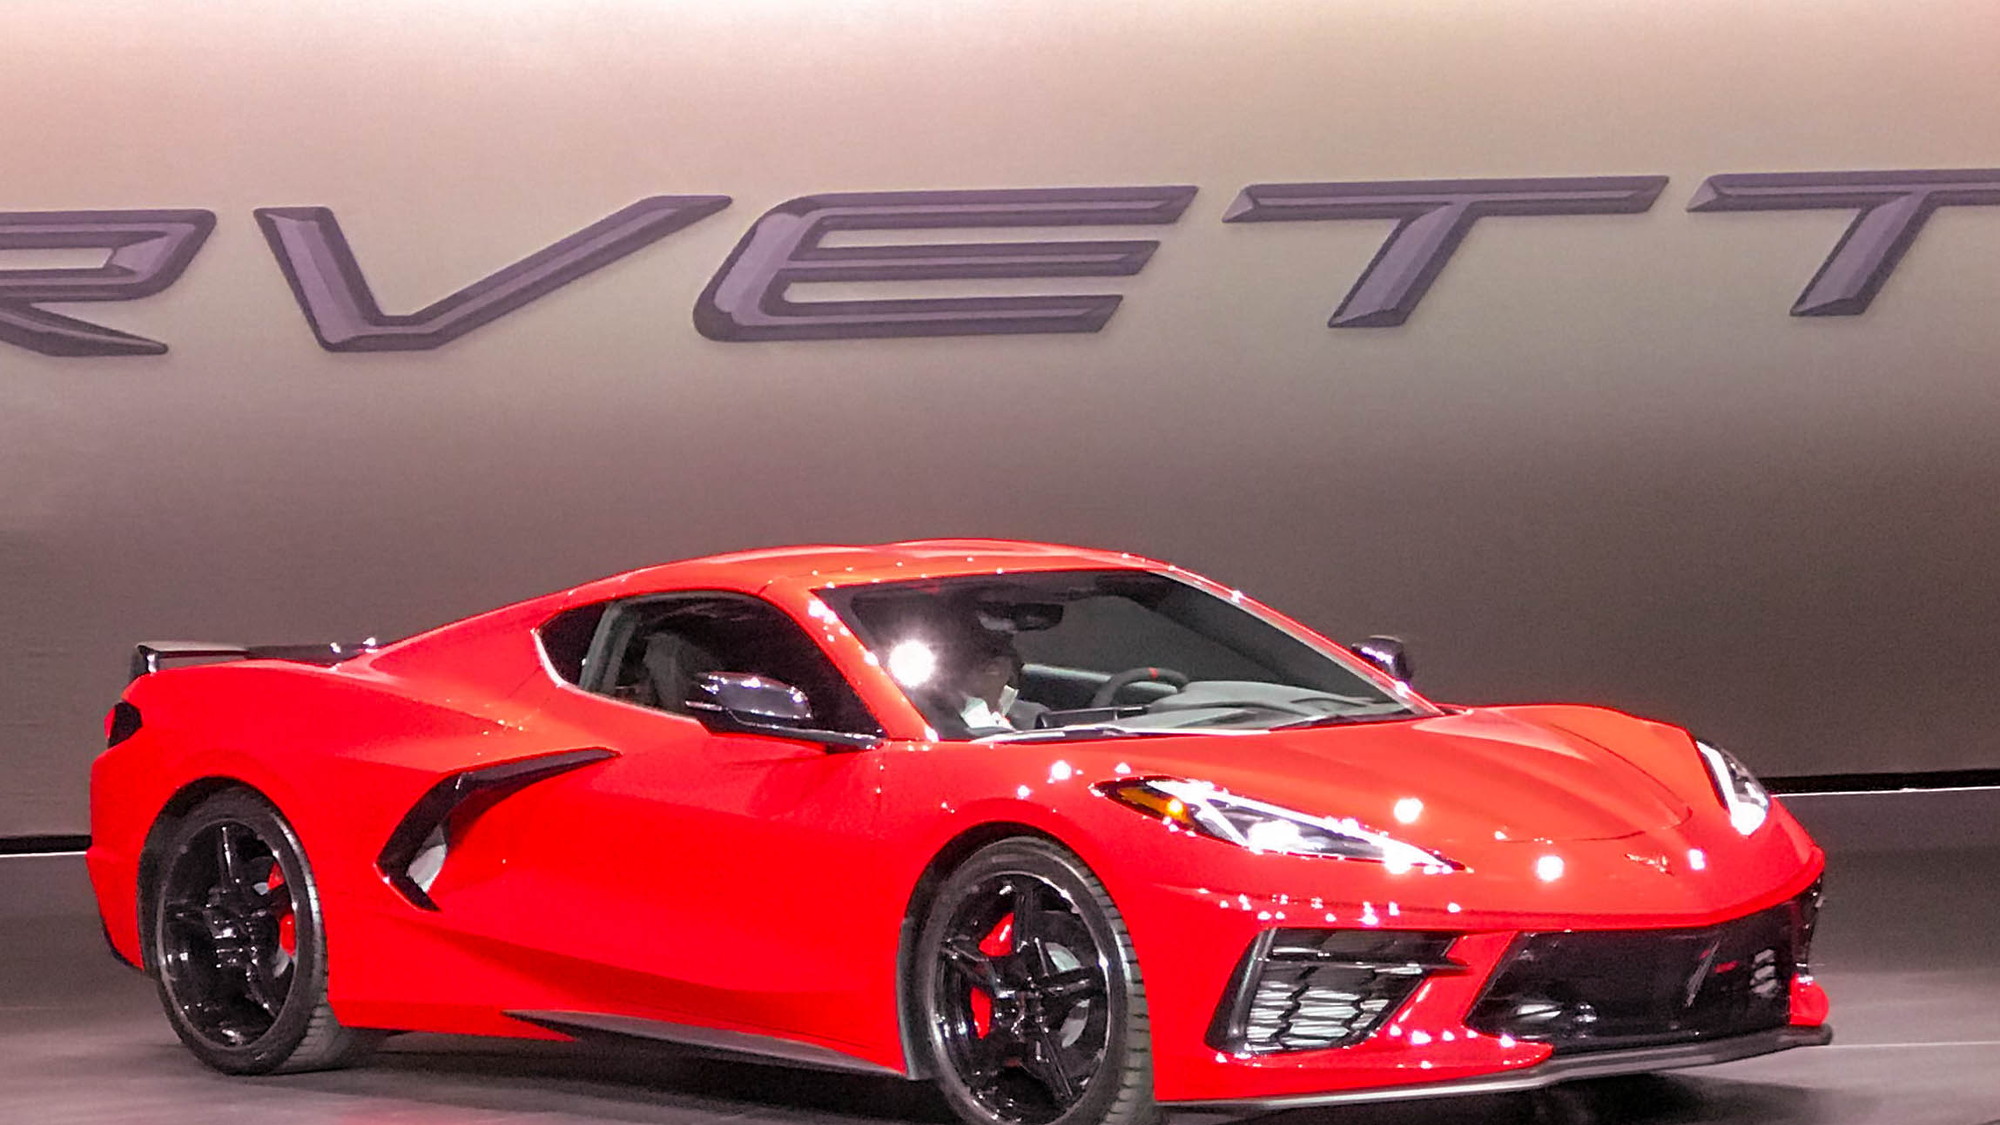 2020 Chevrolet Corvette live reveal